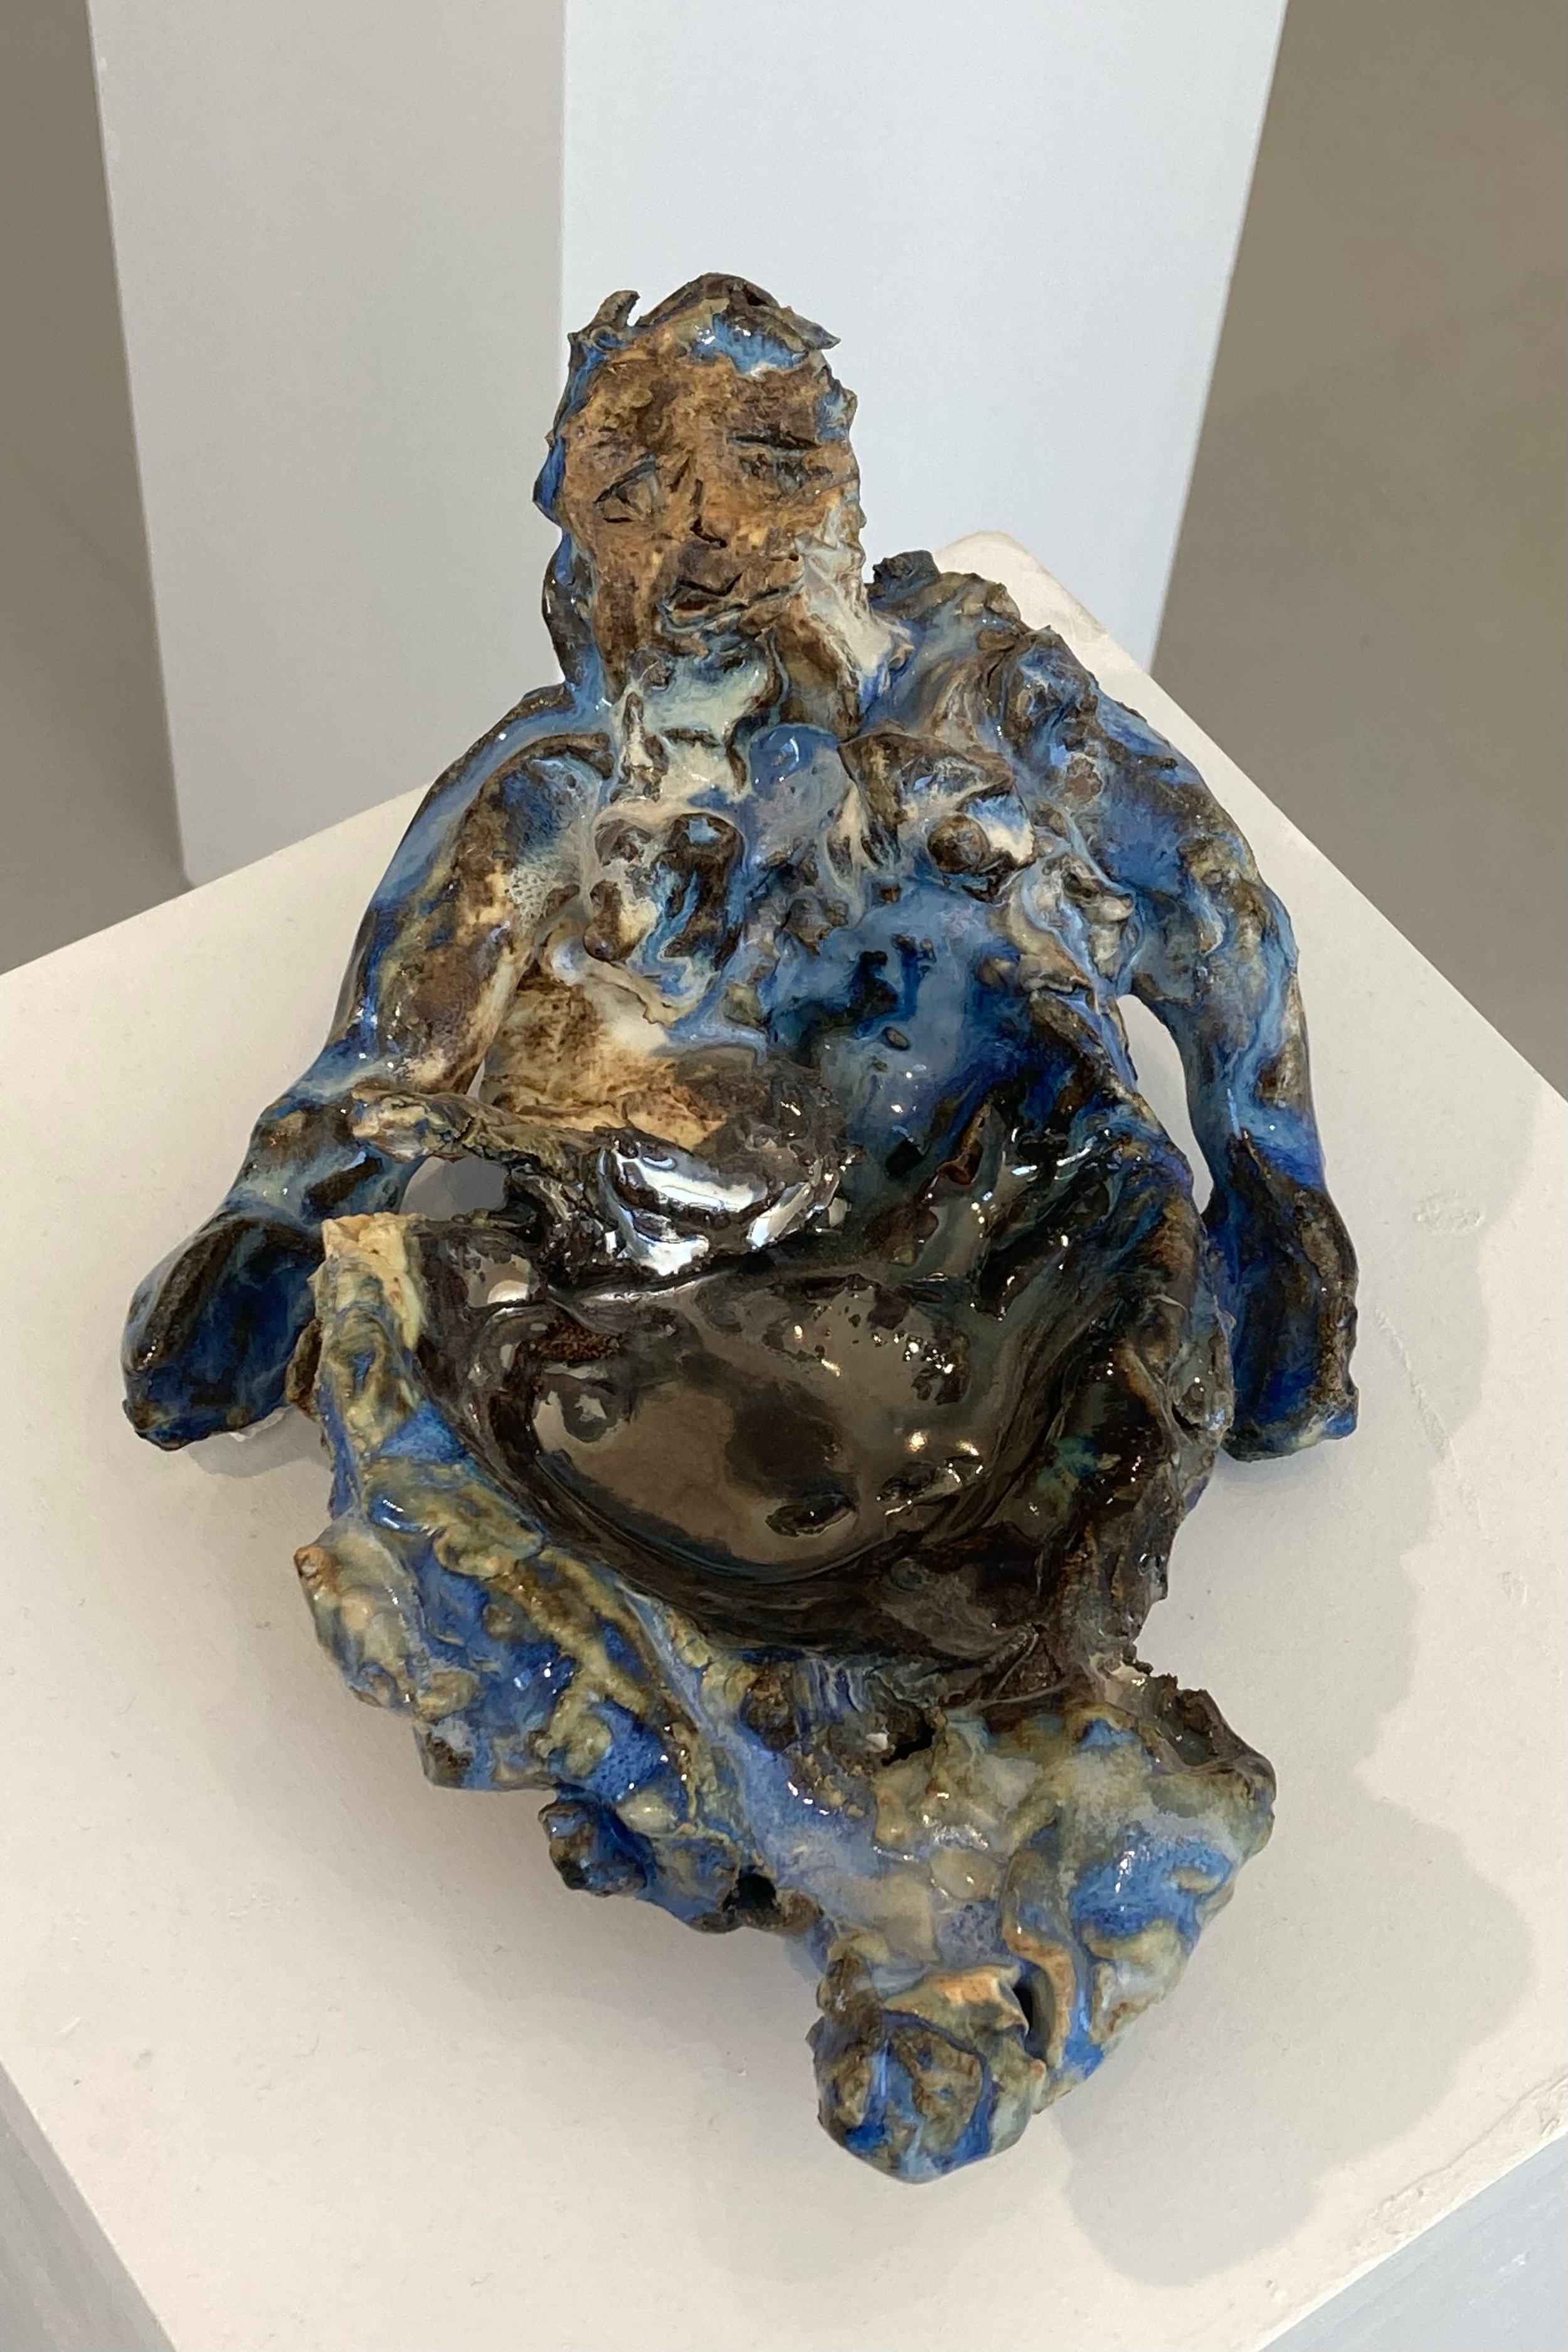  The Bather, Glazed Ceramic, 5.5” X 10” X 4”, 2021  